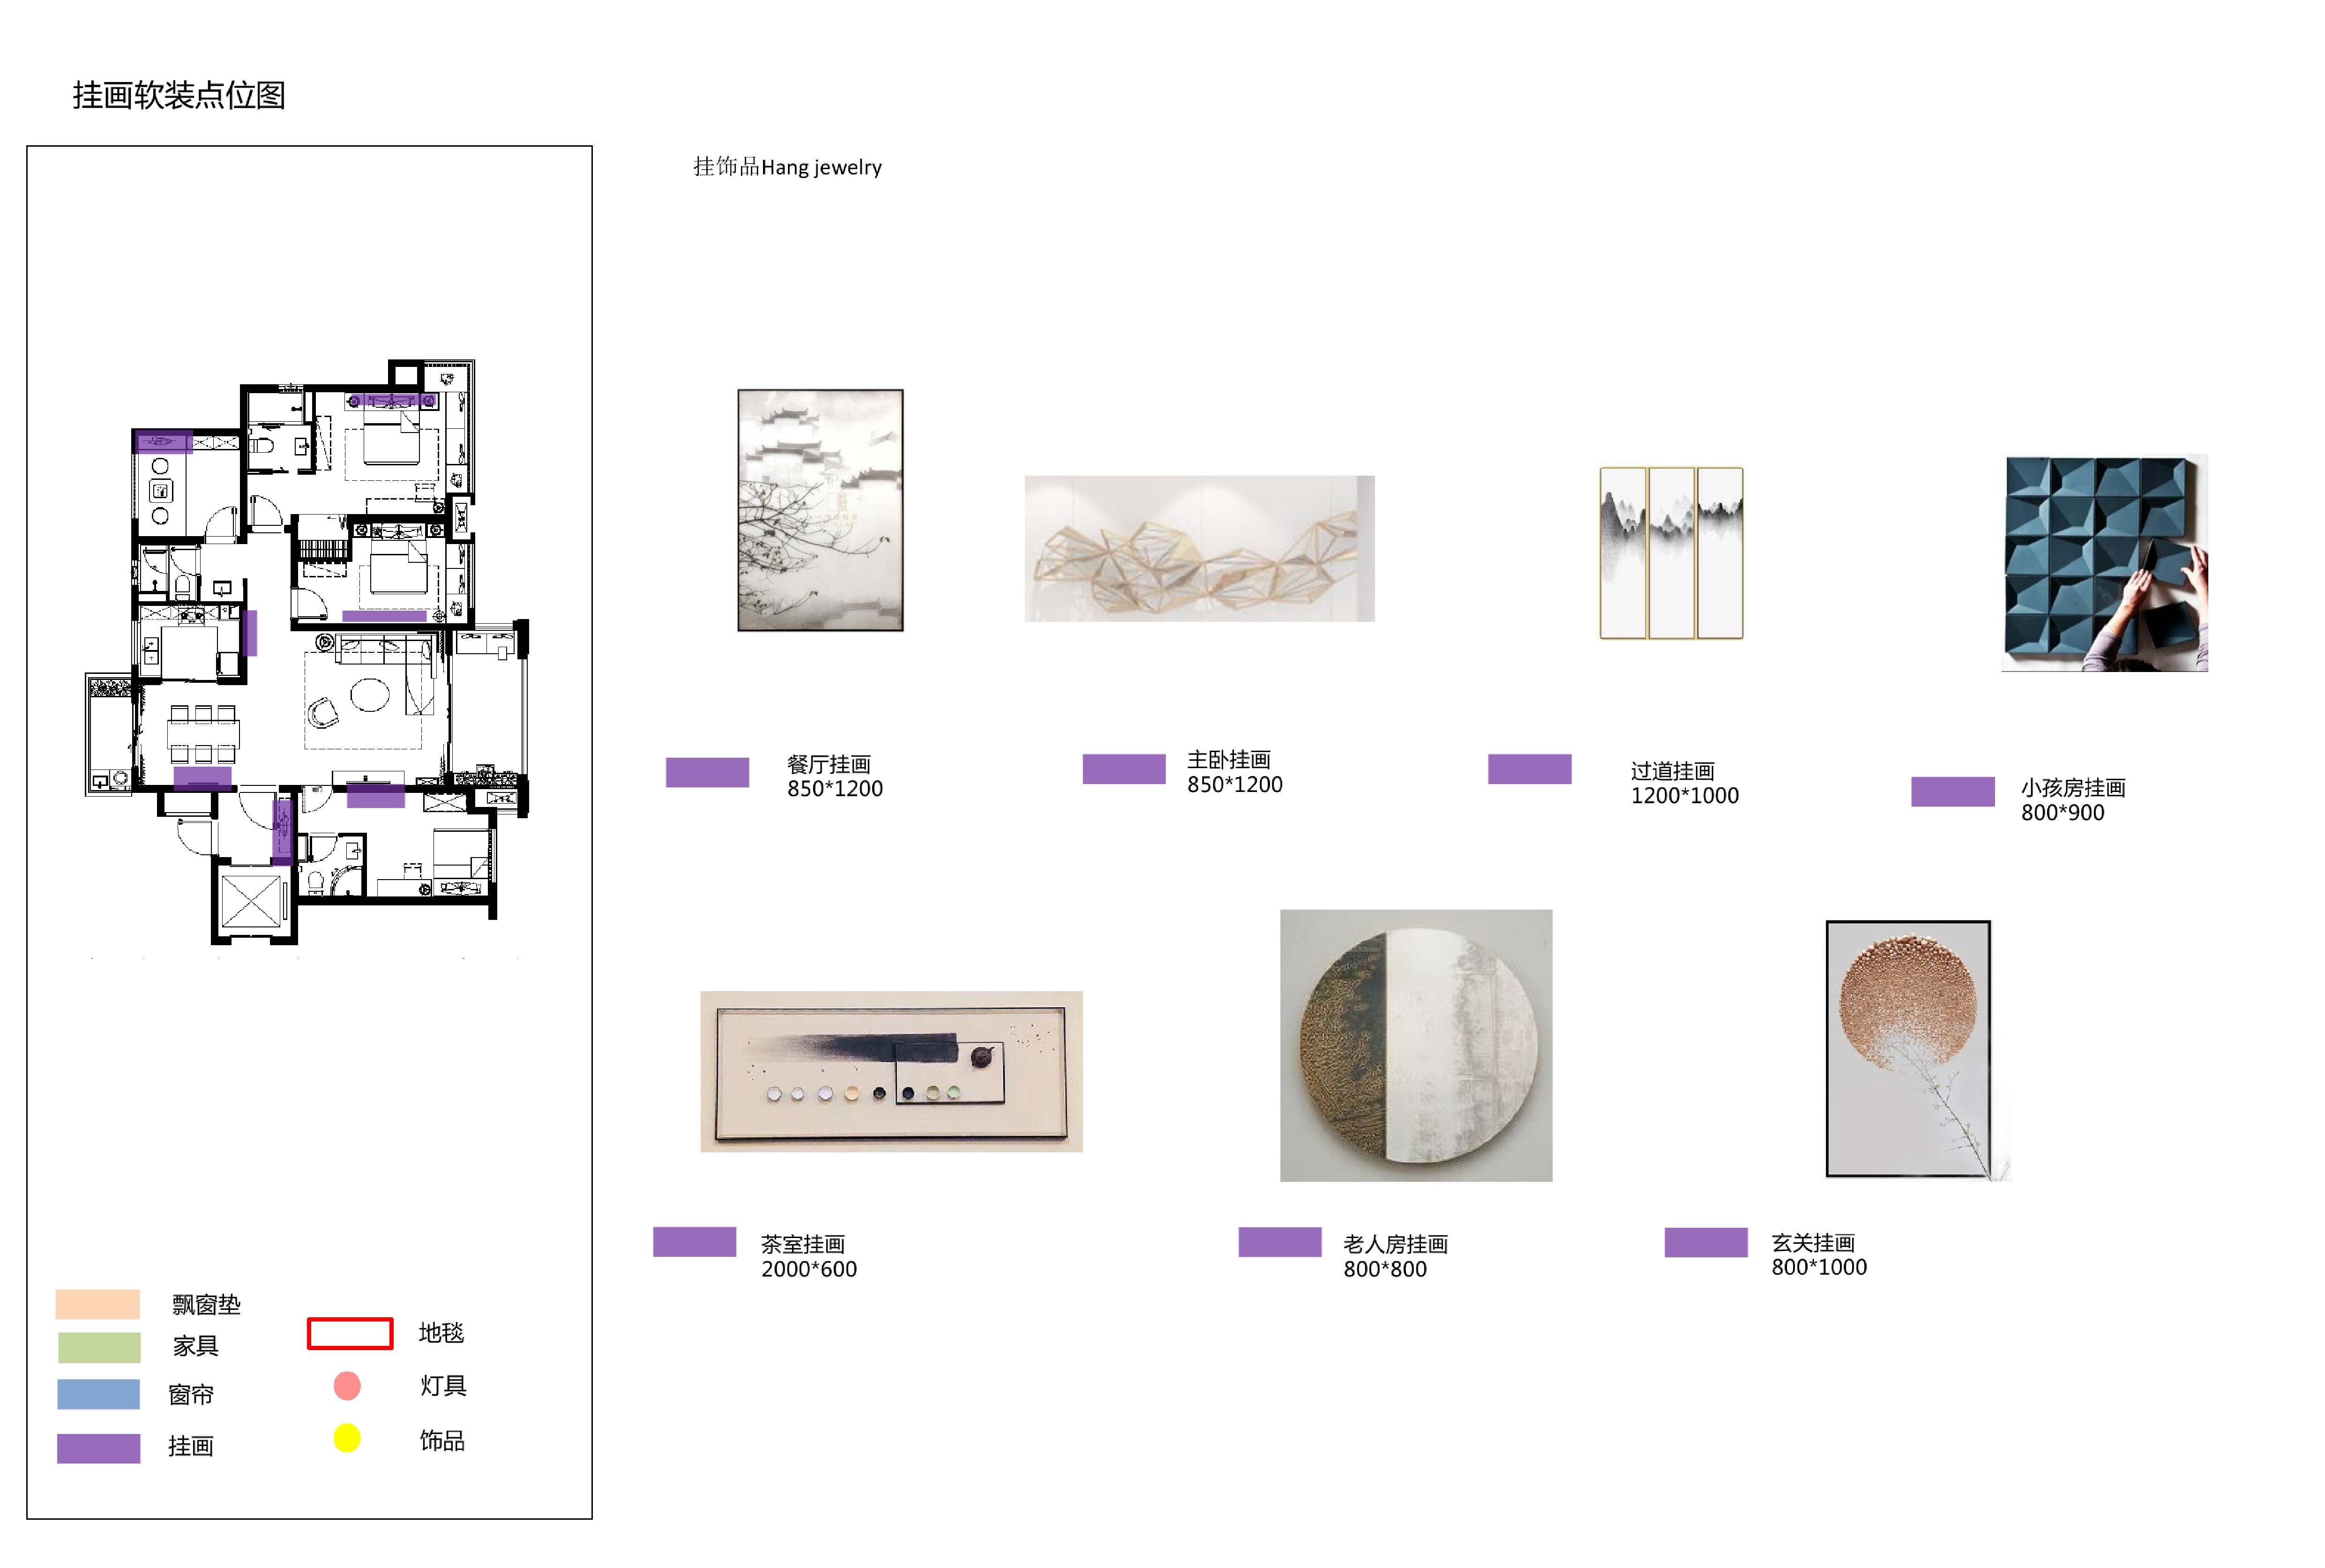 贵州宝能现代中式样板间丨效果图+硬装方案PPT+施工图+物料+水电+软装方案-19